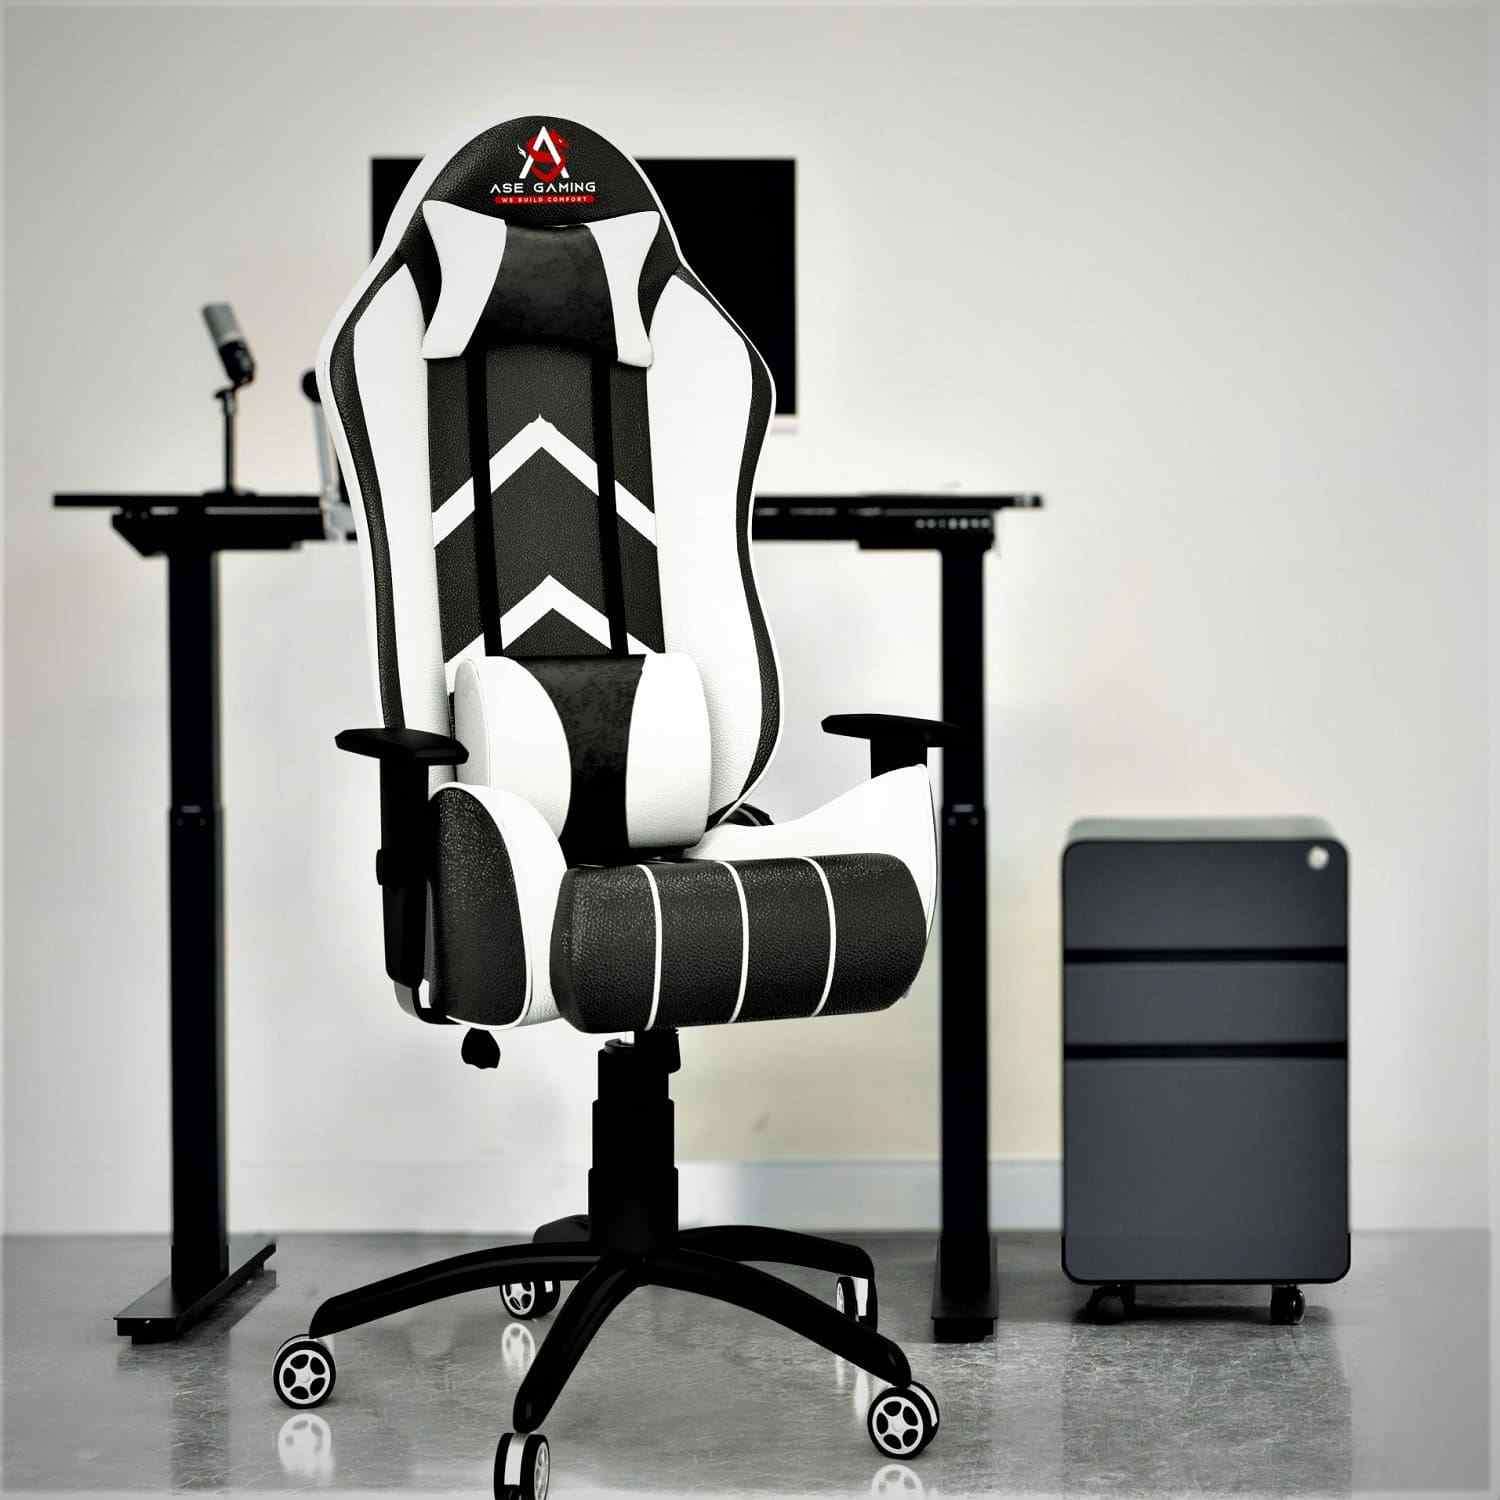 ASE Gaming Ranger Series Gaming Chair (Red & Black)